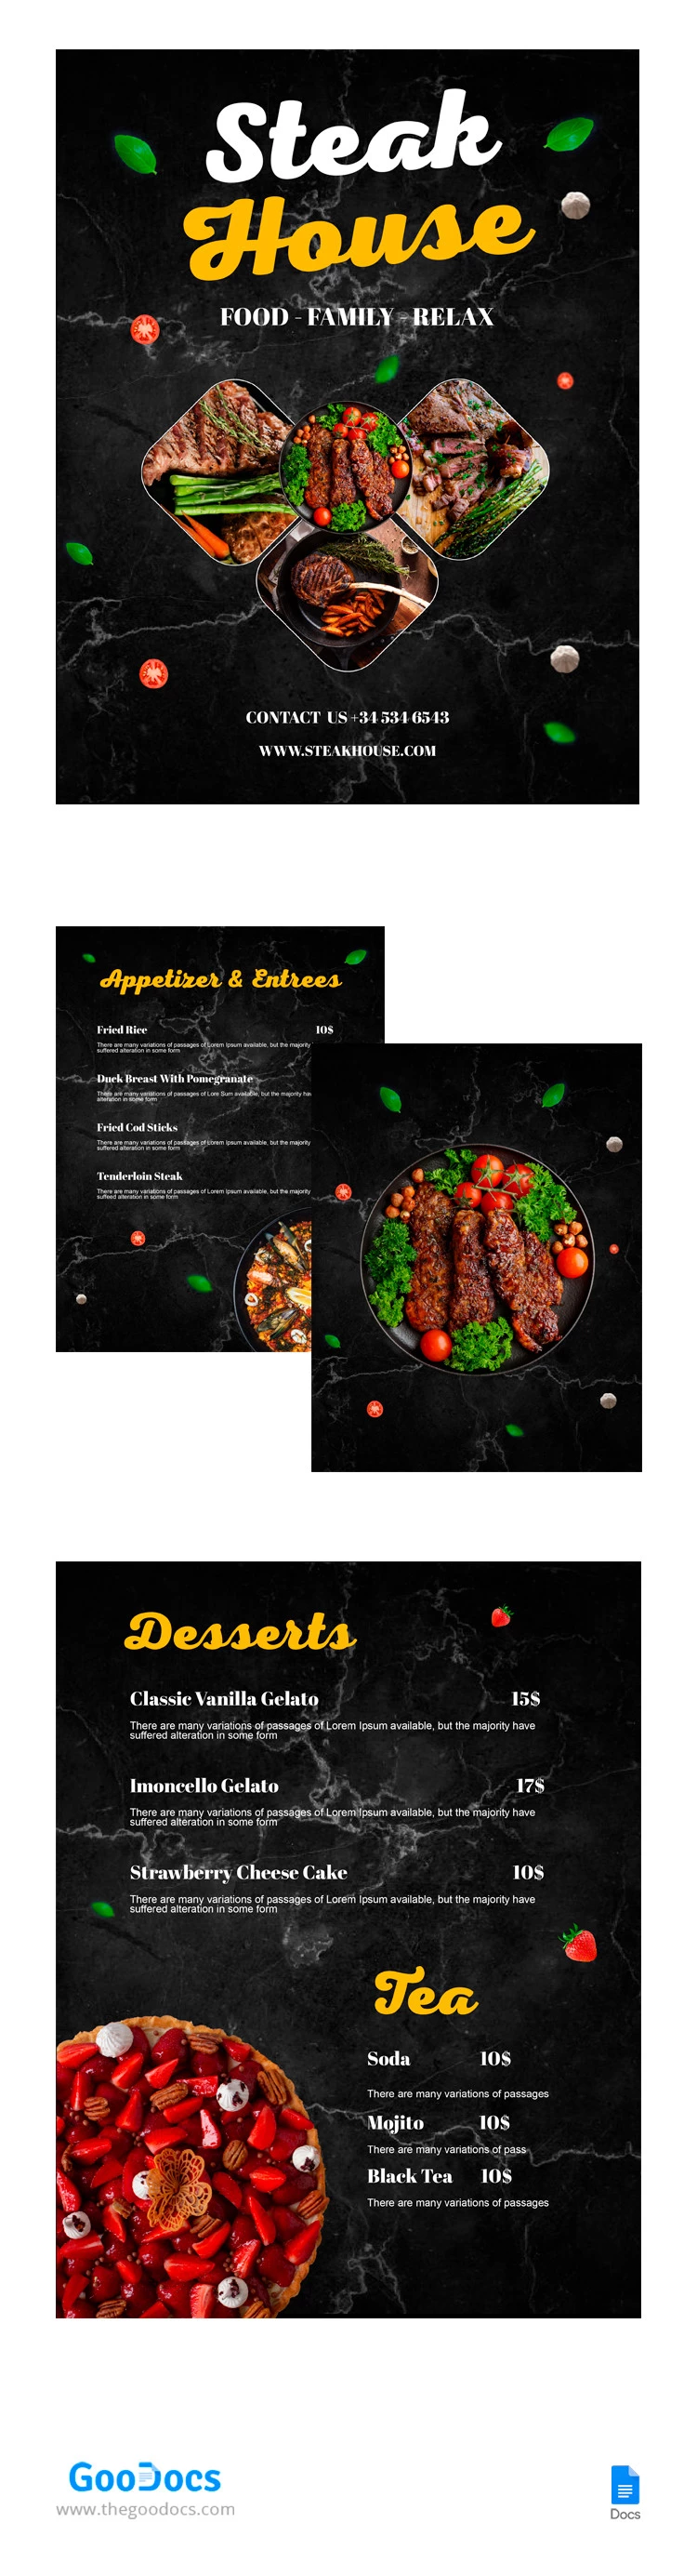 Menu do Restaurante de Carnes - free Google Docs Template - 10065320